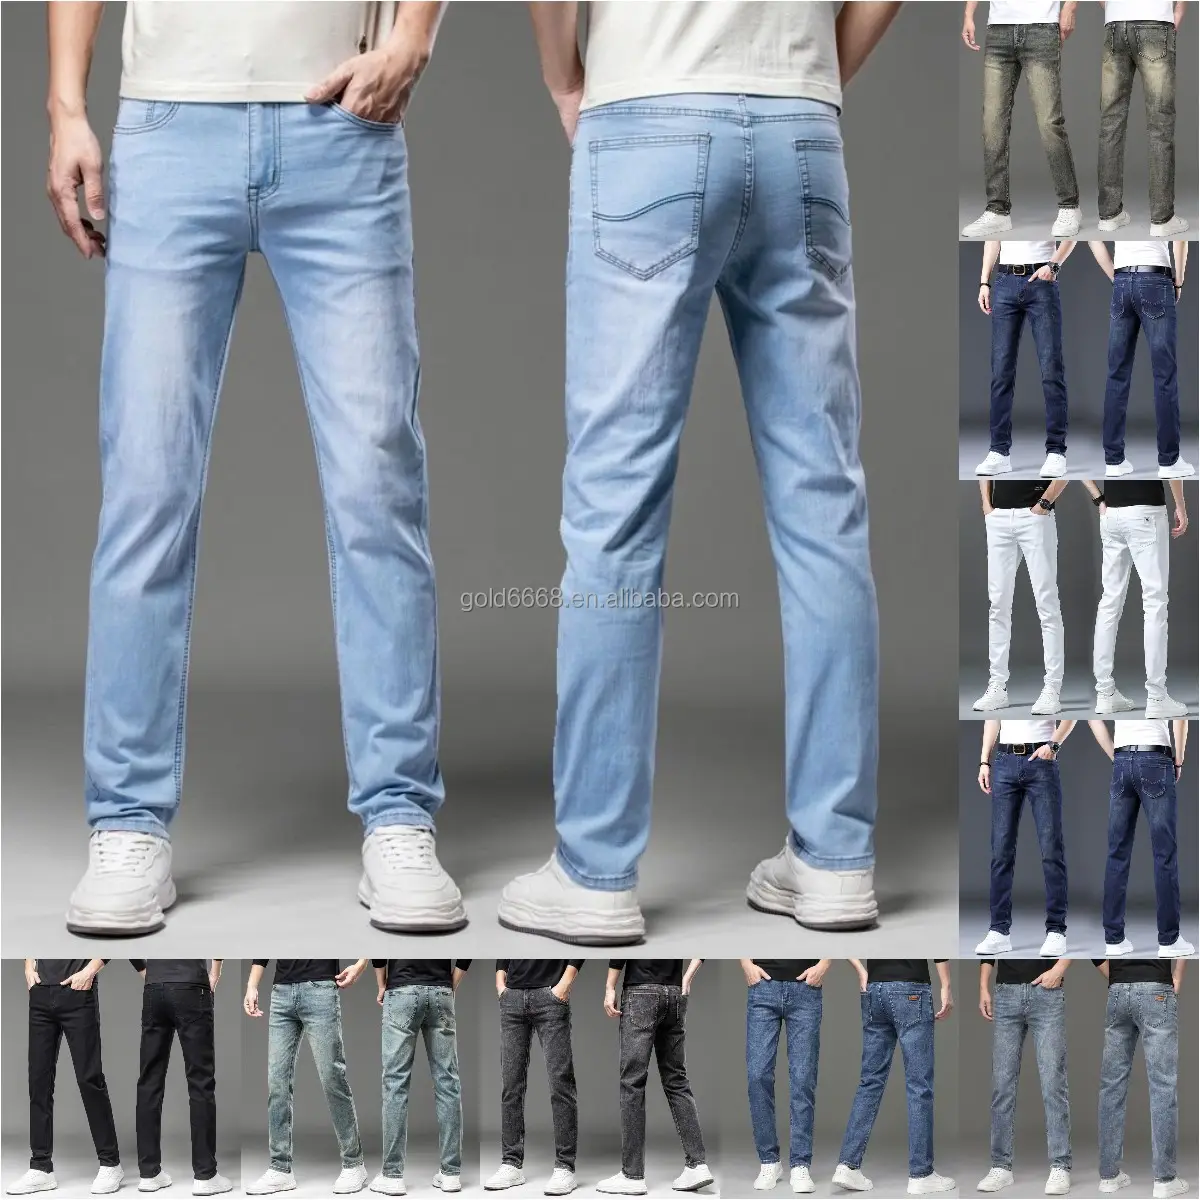 Atacado Novo estilo dos homens de destruição angústia Calças Emblema Calças Art Patch Skinny jeans Calças Finas jeans dos homens